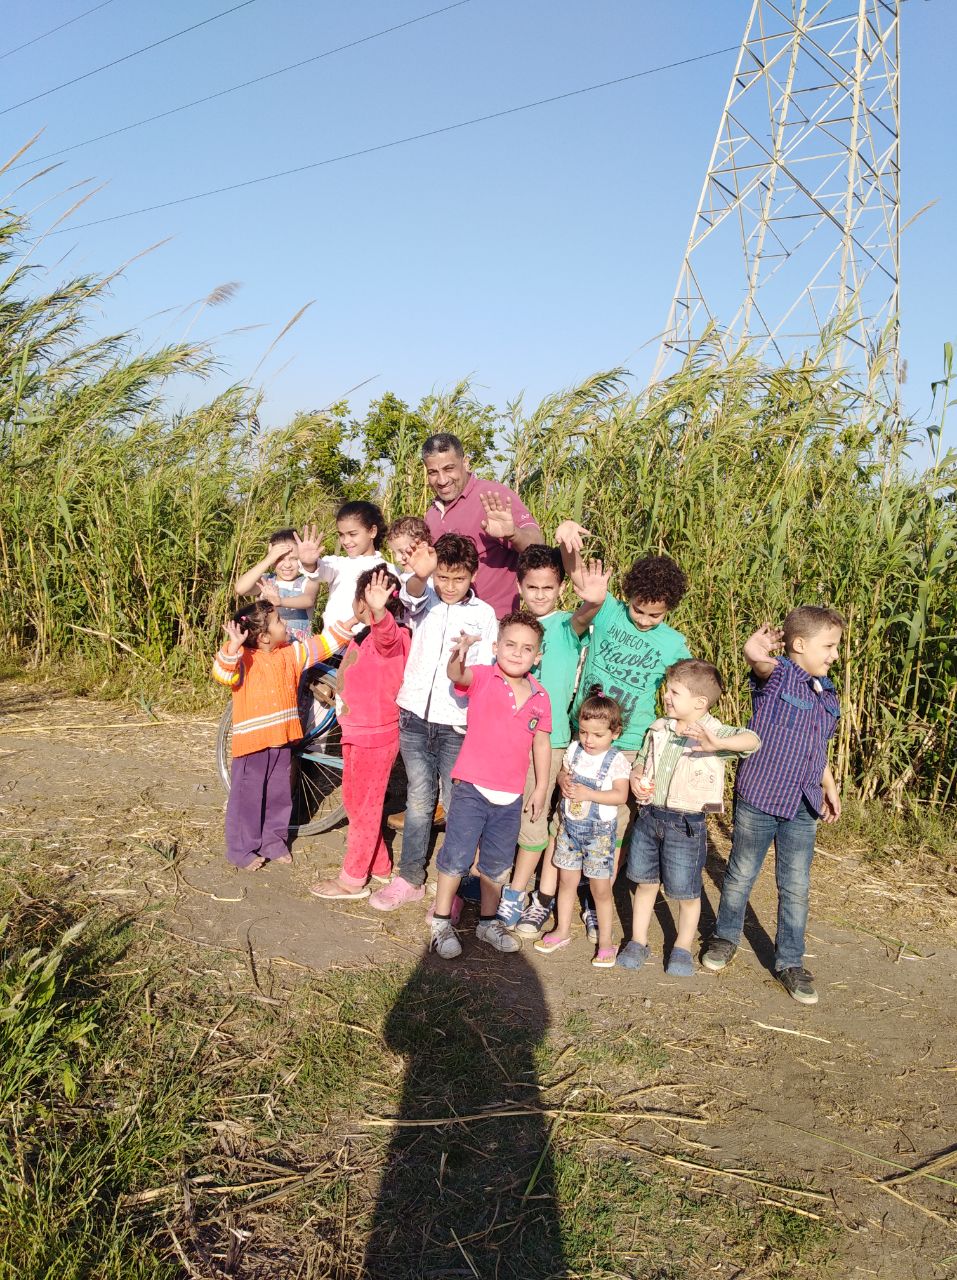 تجمع أطفال عائلة بأحد الحقول بالاسكندرية